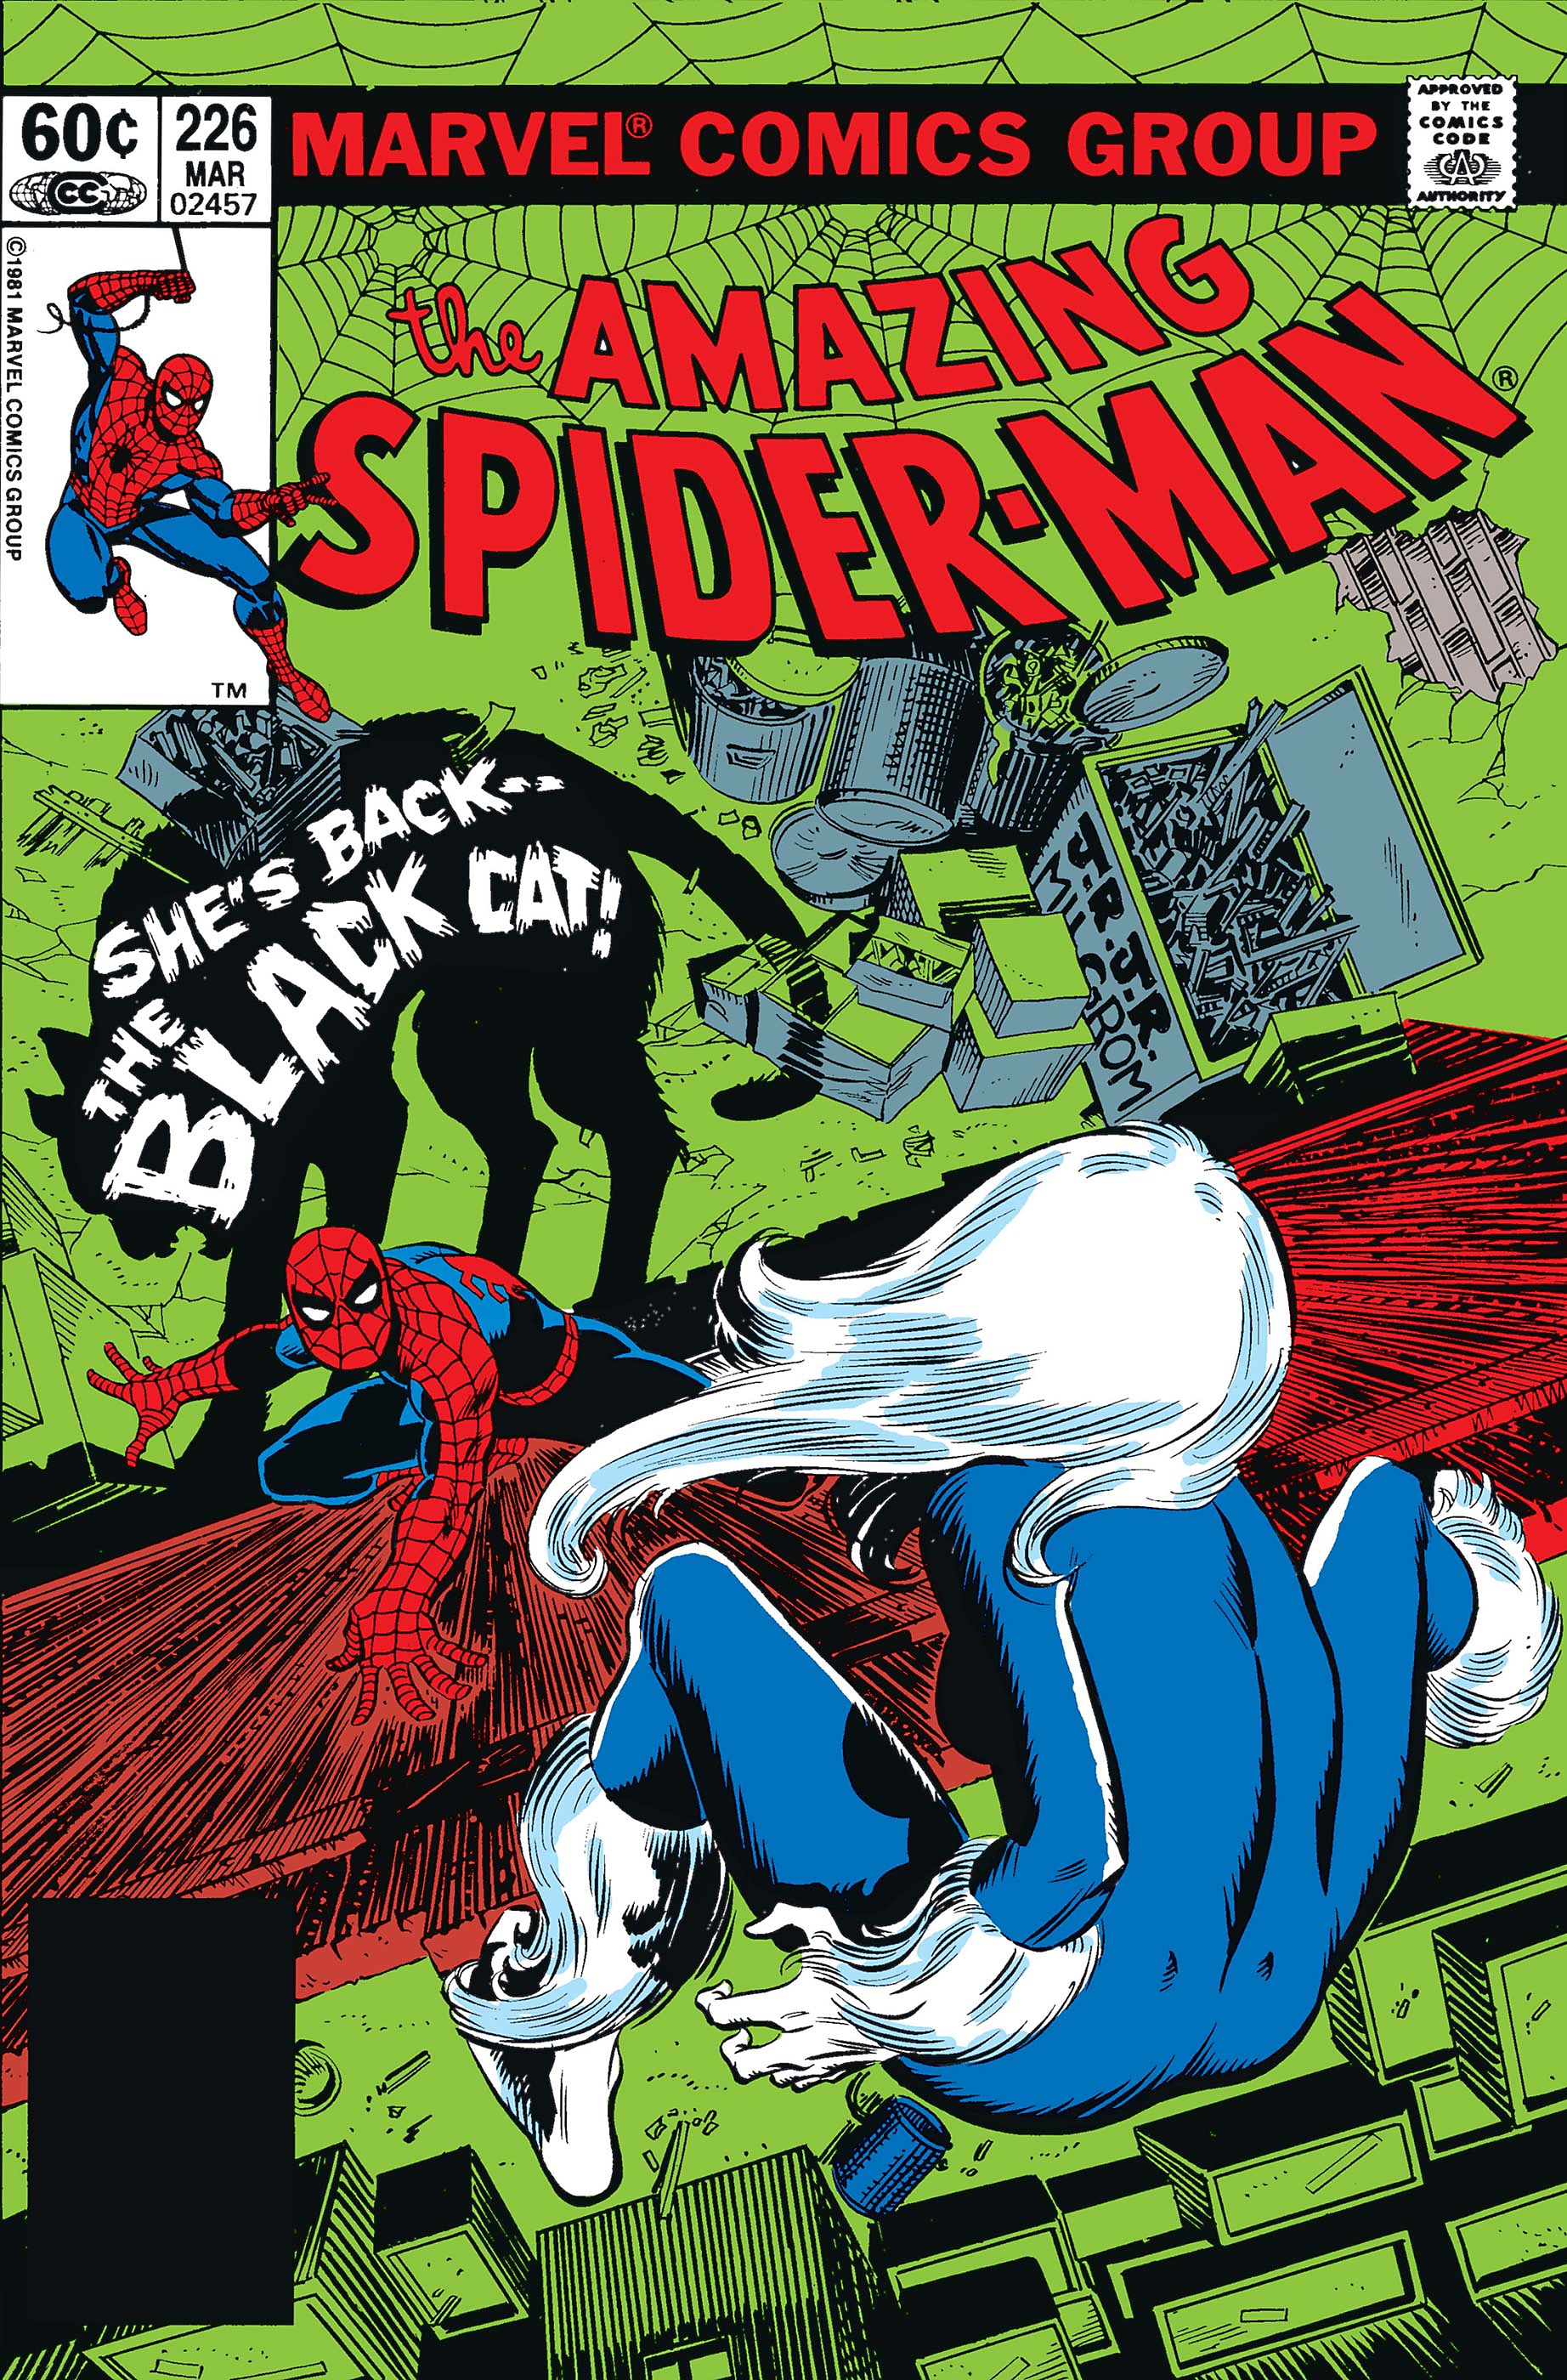 Spider-Man La rapina Fumetti consigliati